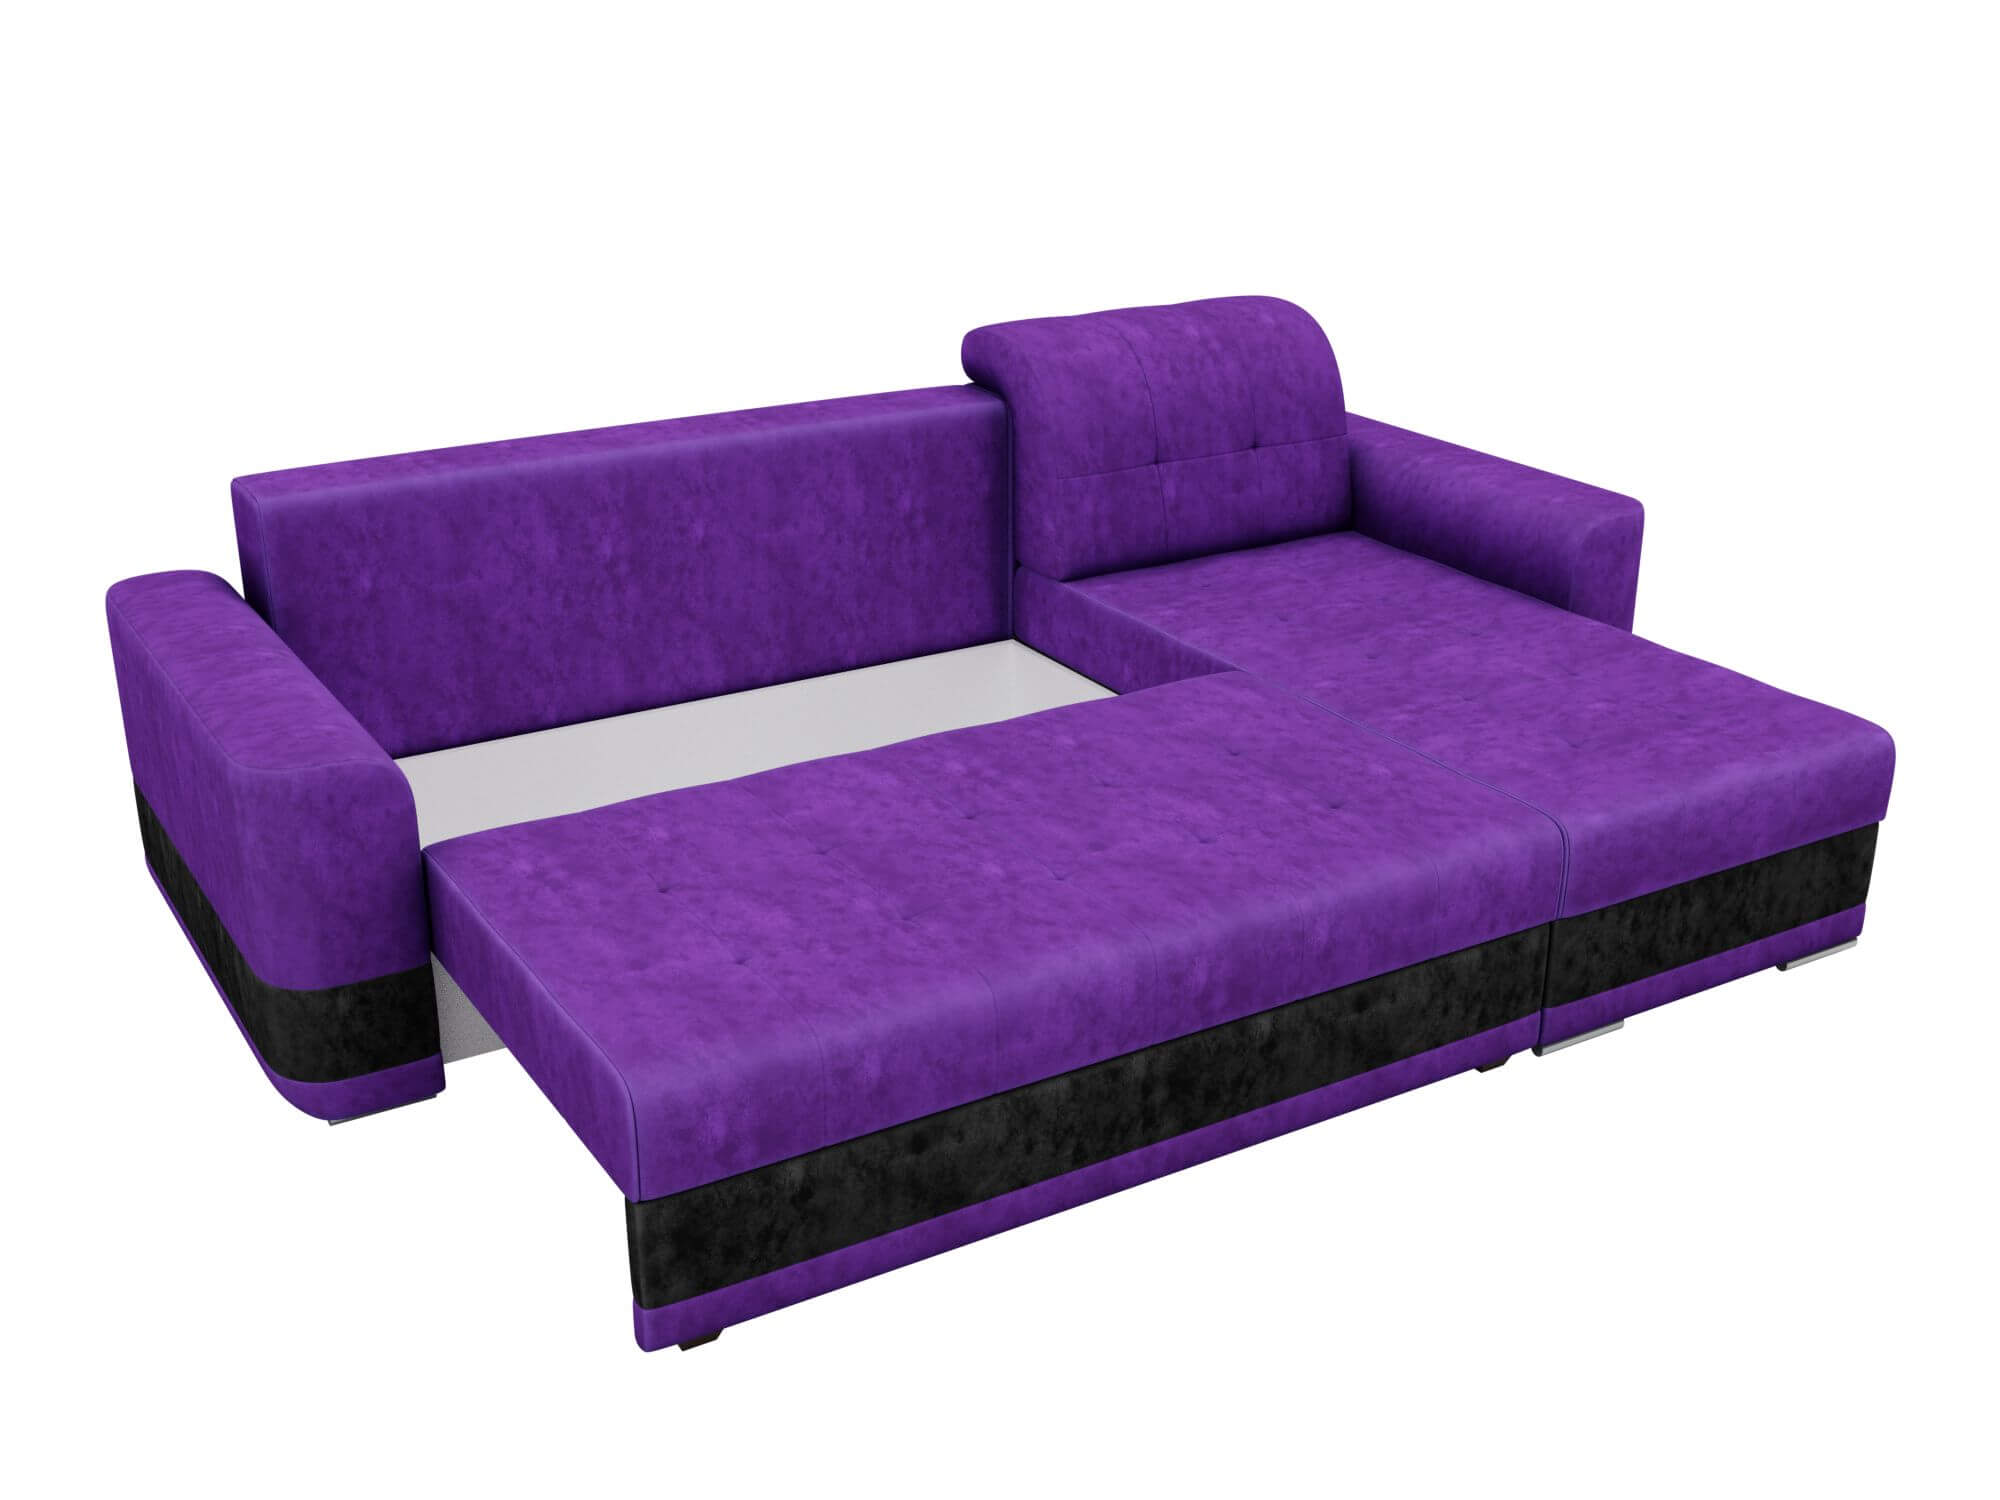 Честер фиолетовый. Диван Честер фиолетовый. Диван угловой фиолетовый велюр. Сиреневый велюровый диван. Диван в сиреневом велюр цвета.